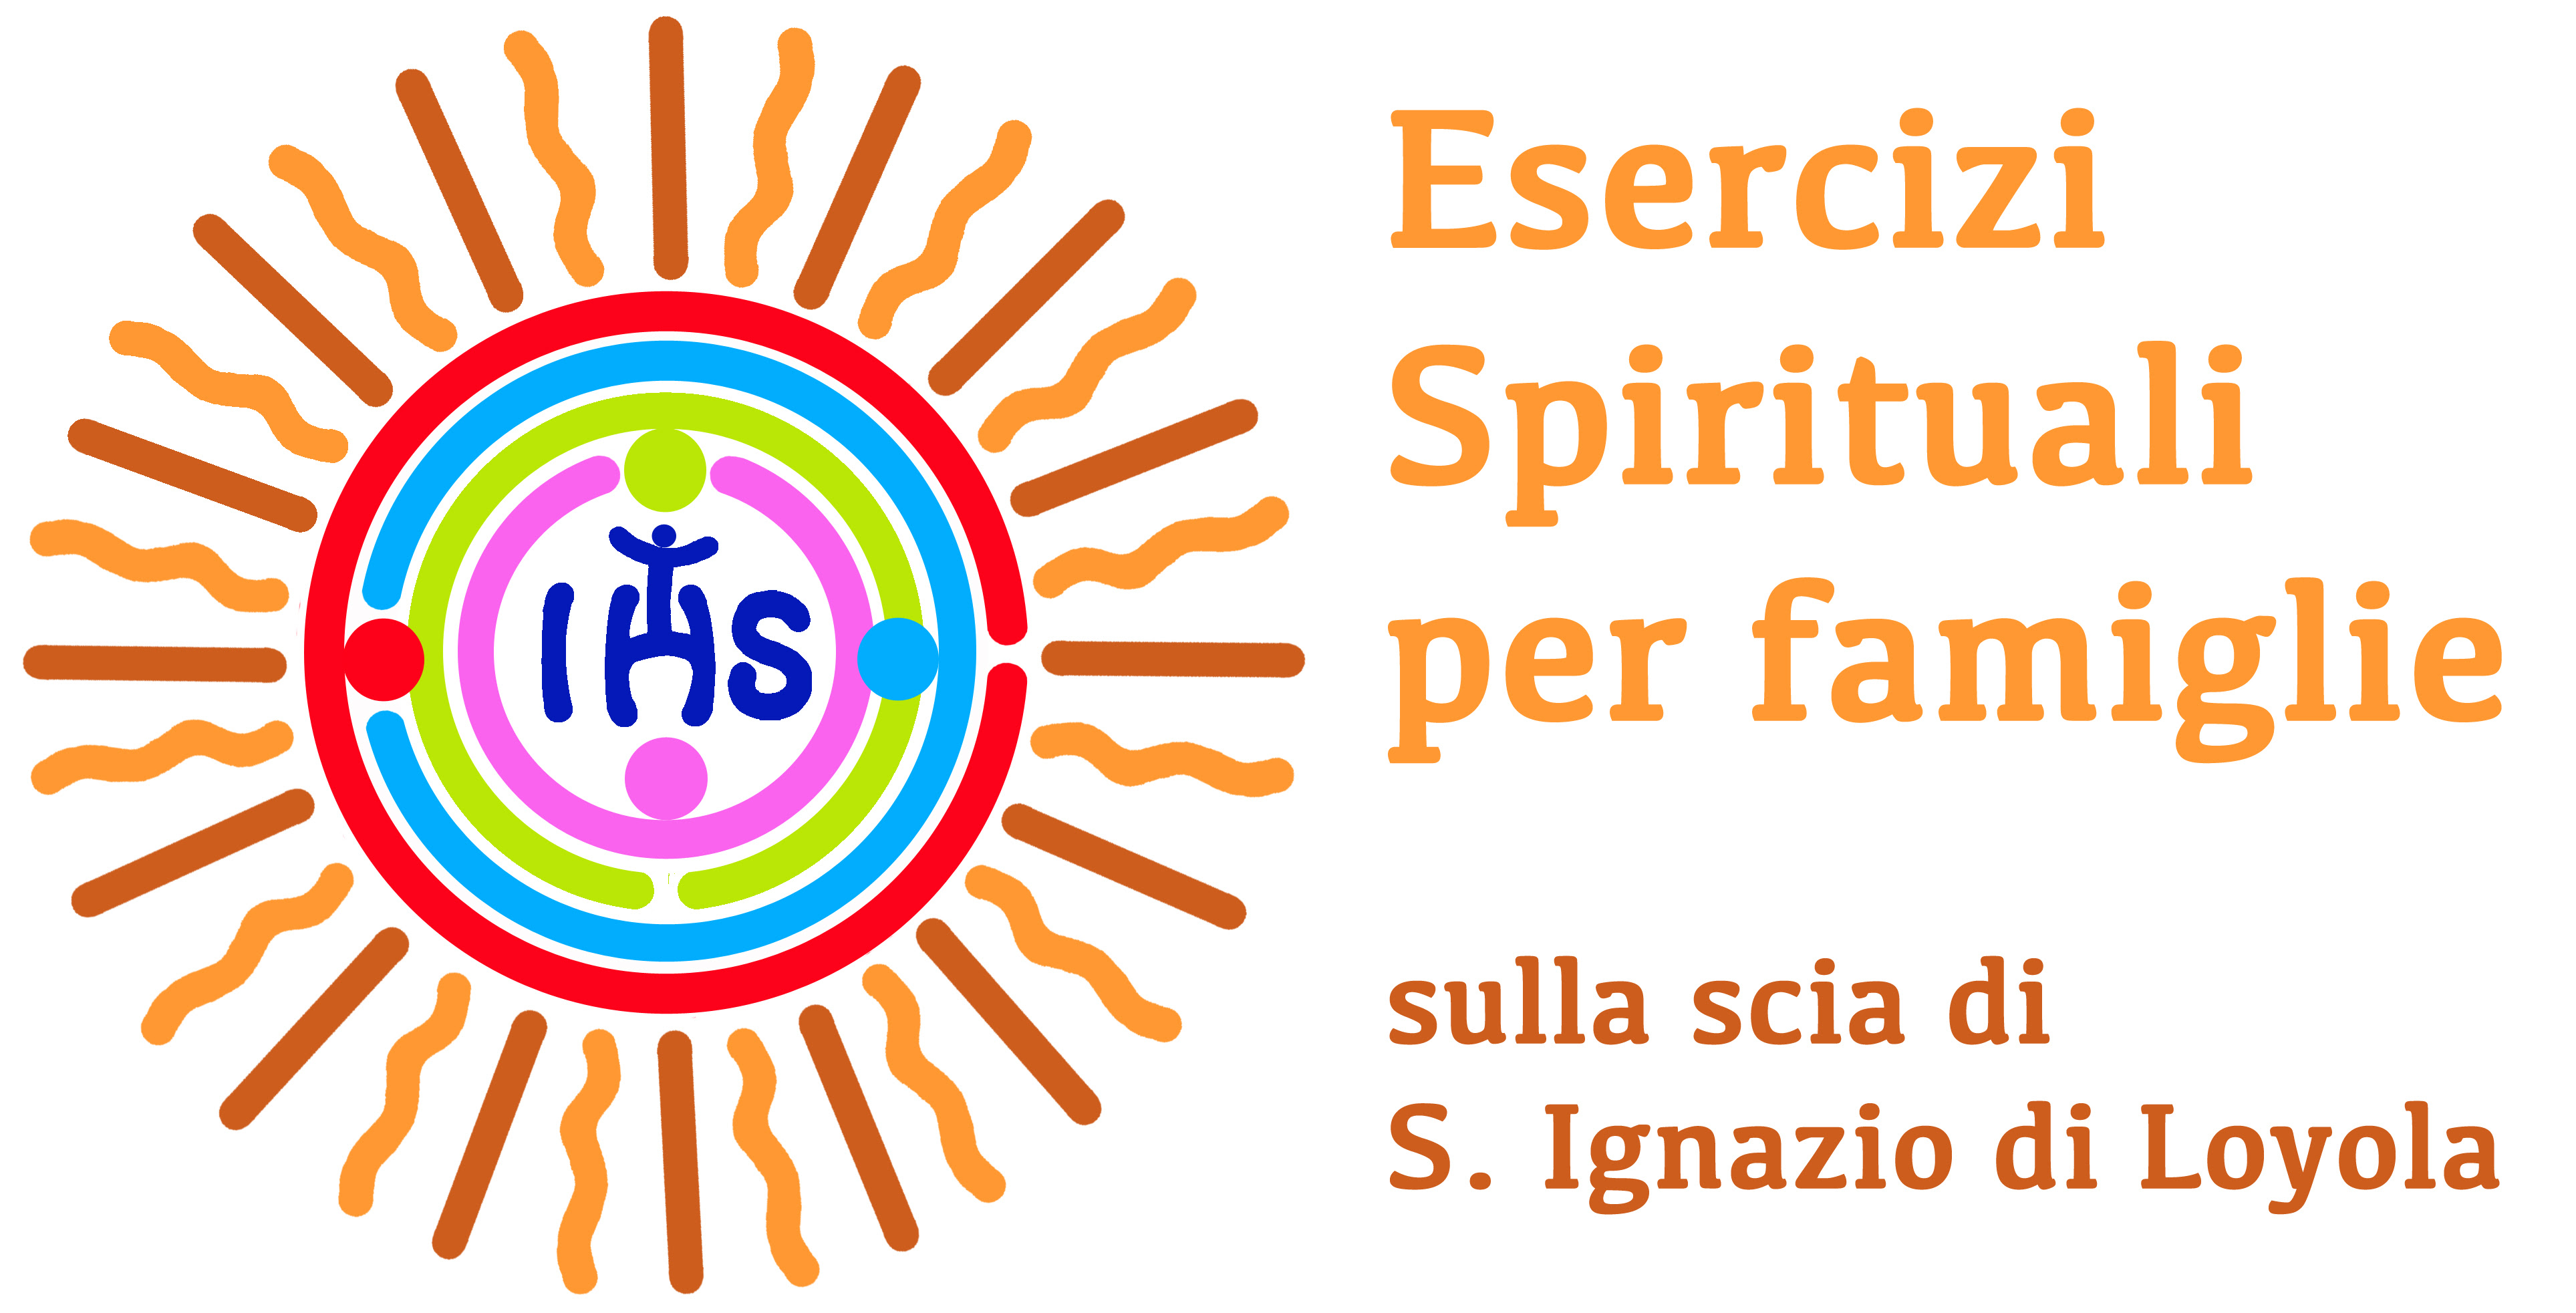 Esercizi spirituali per famiglie